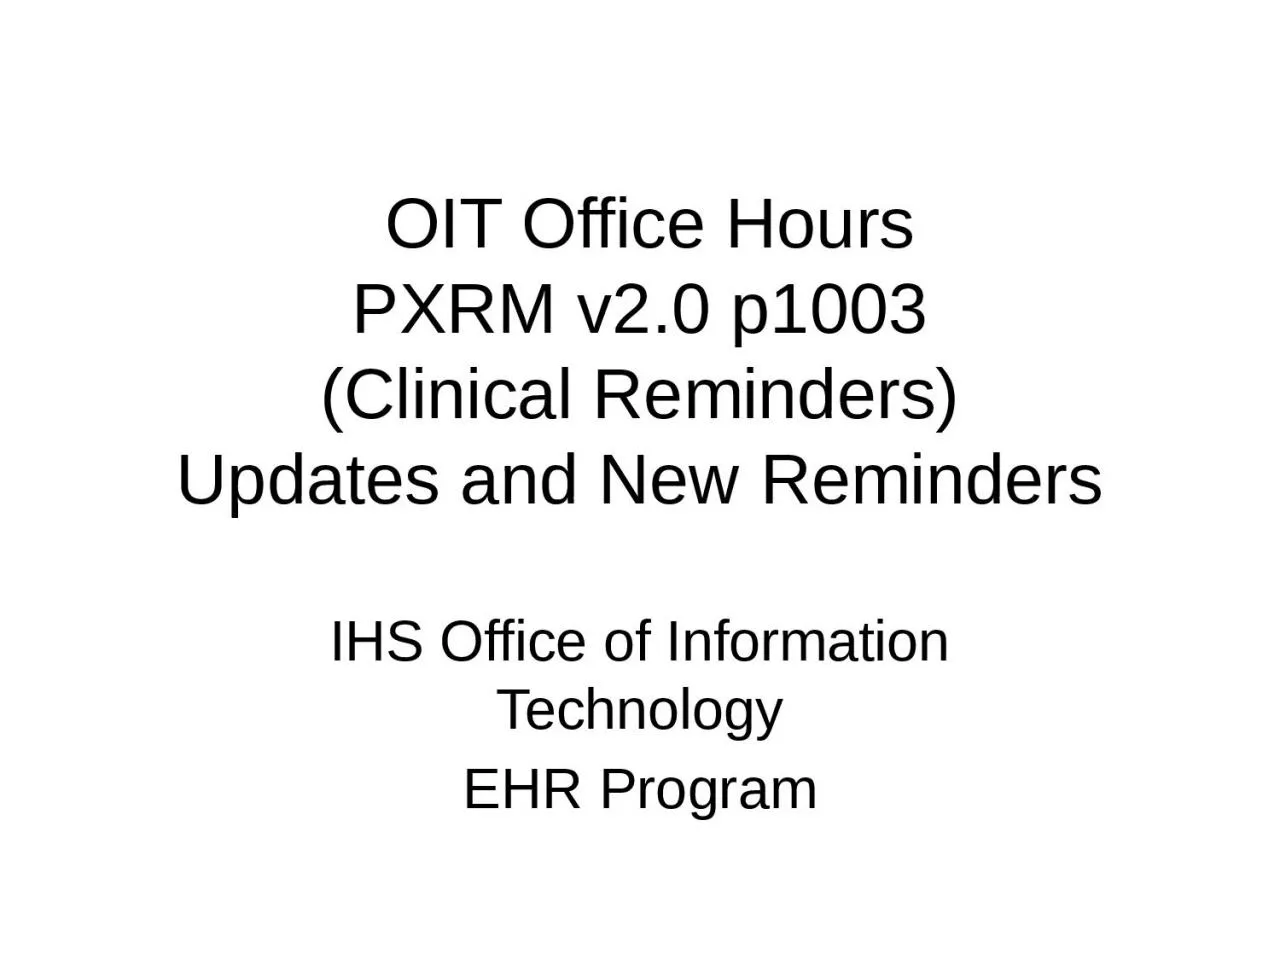 OIT Office Hours PXRM v2.0